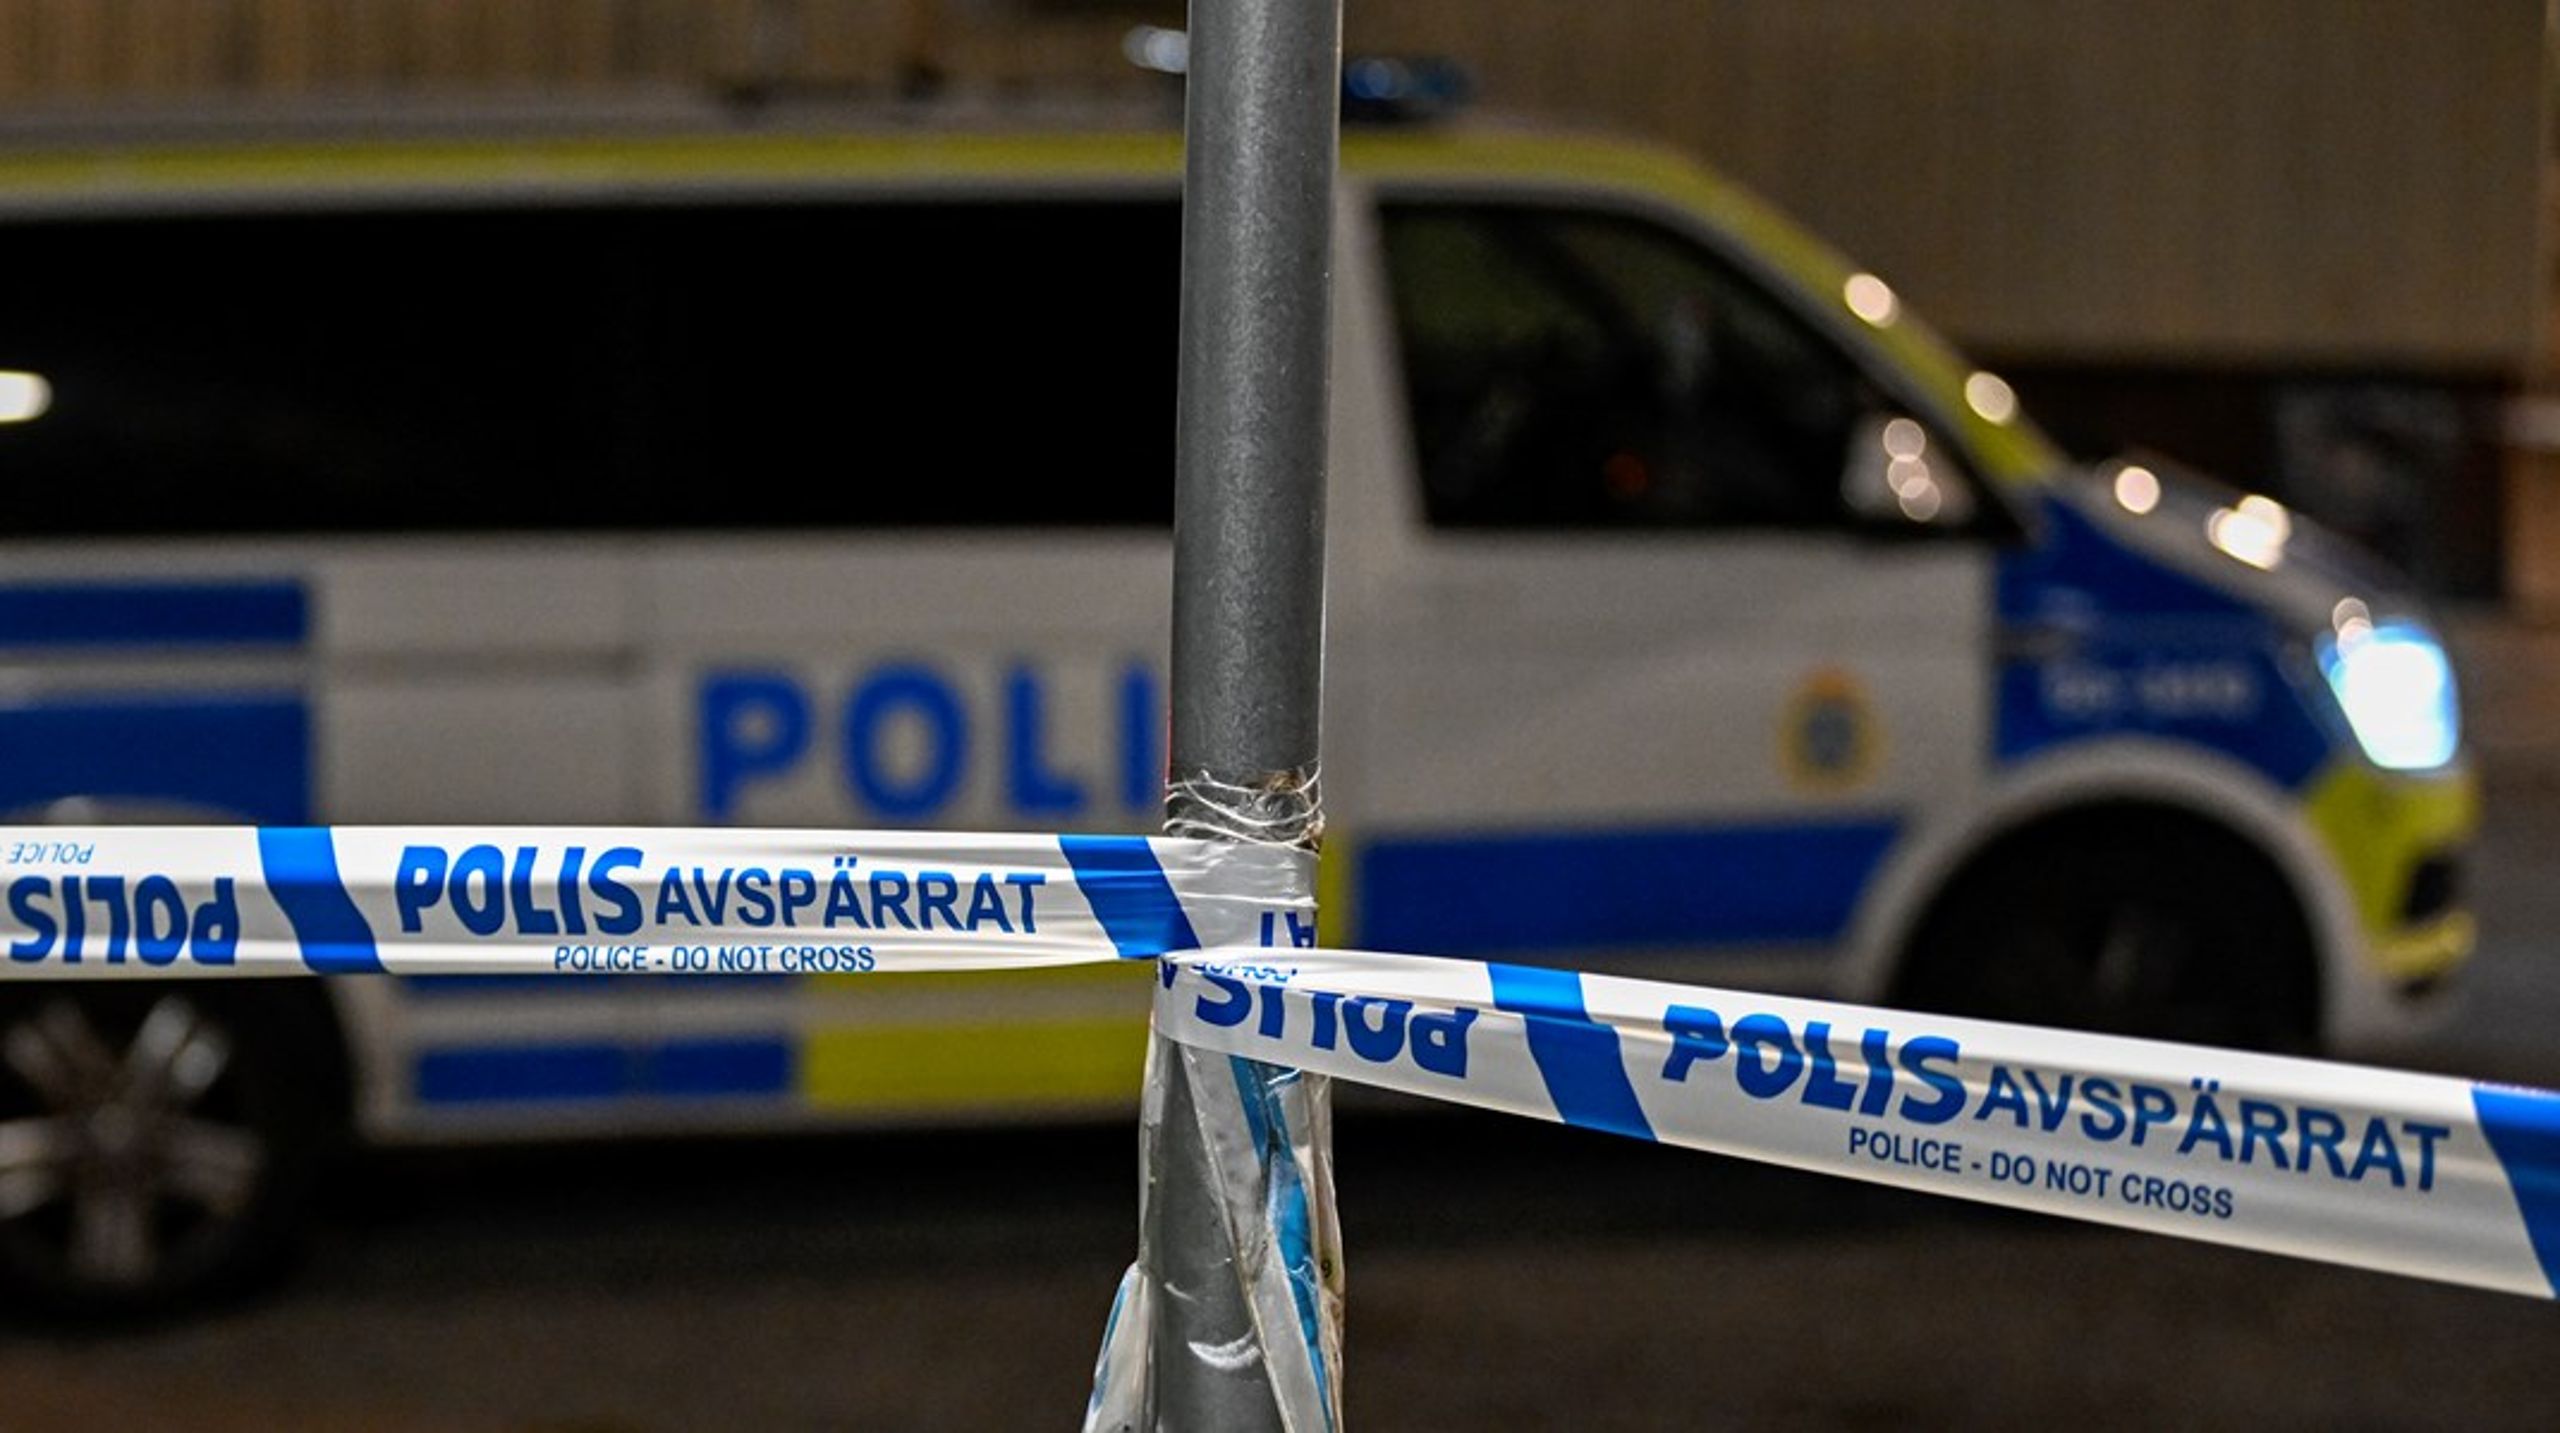 Sverige behöver införa garanterad polisuppföljning på brott som rapporteras in av företagare för att påbörja resan mot ökad trygghet, skriver debattörerna.